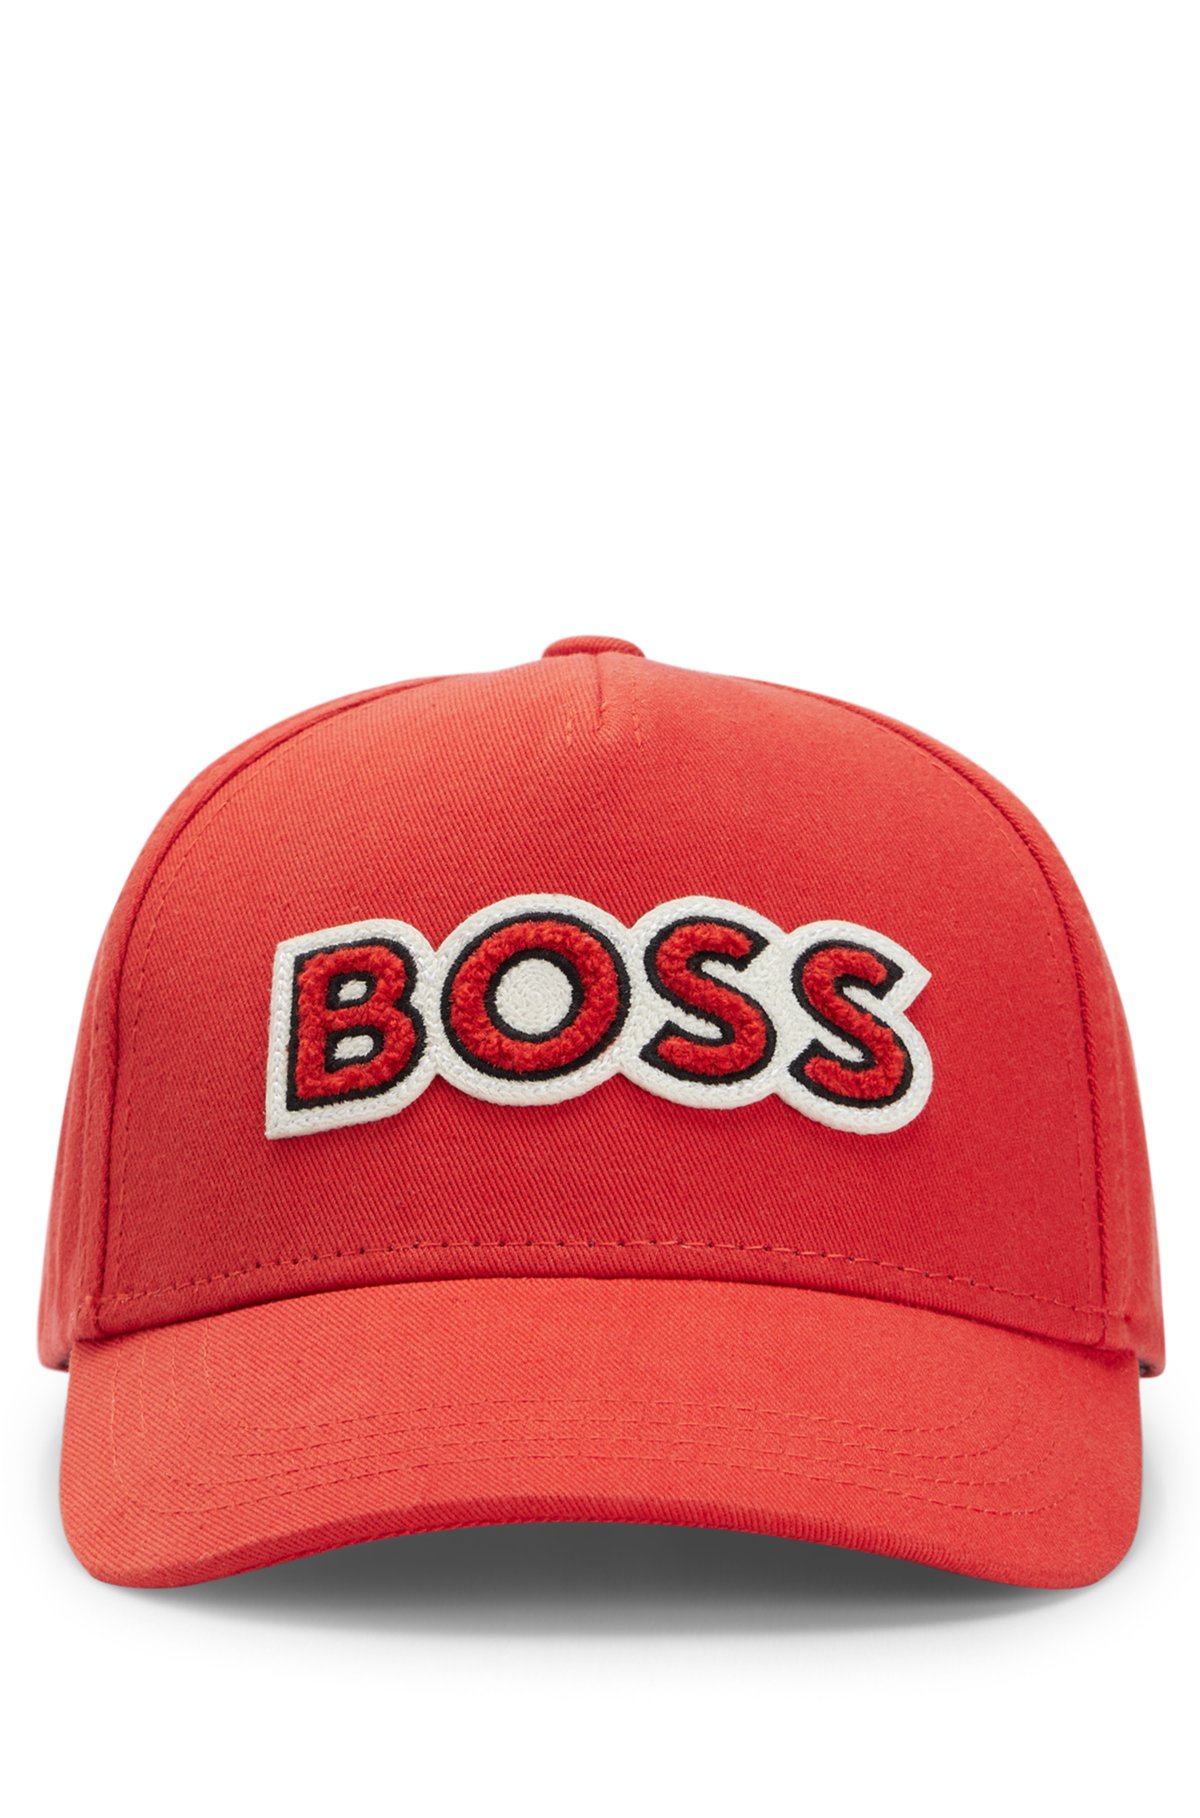 BOSS - BOSS x logo Schmidt Alica with cap patch cotton-twill